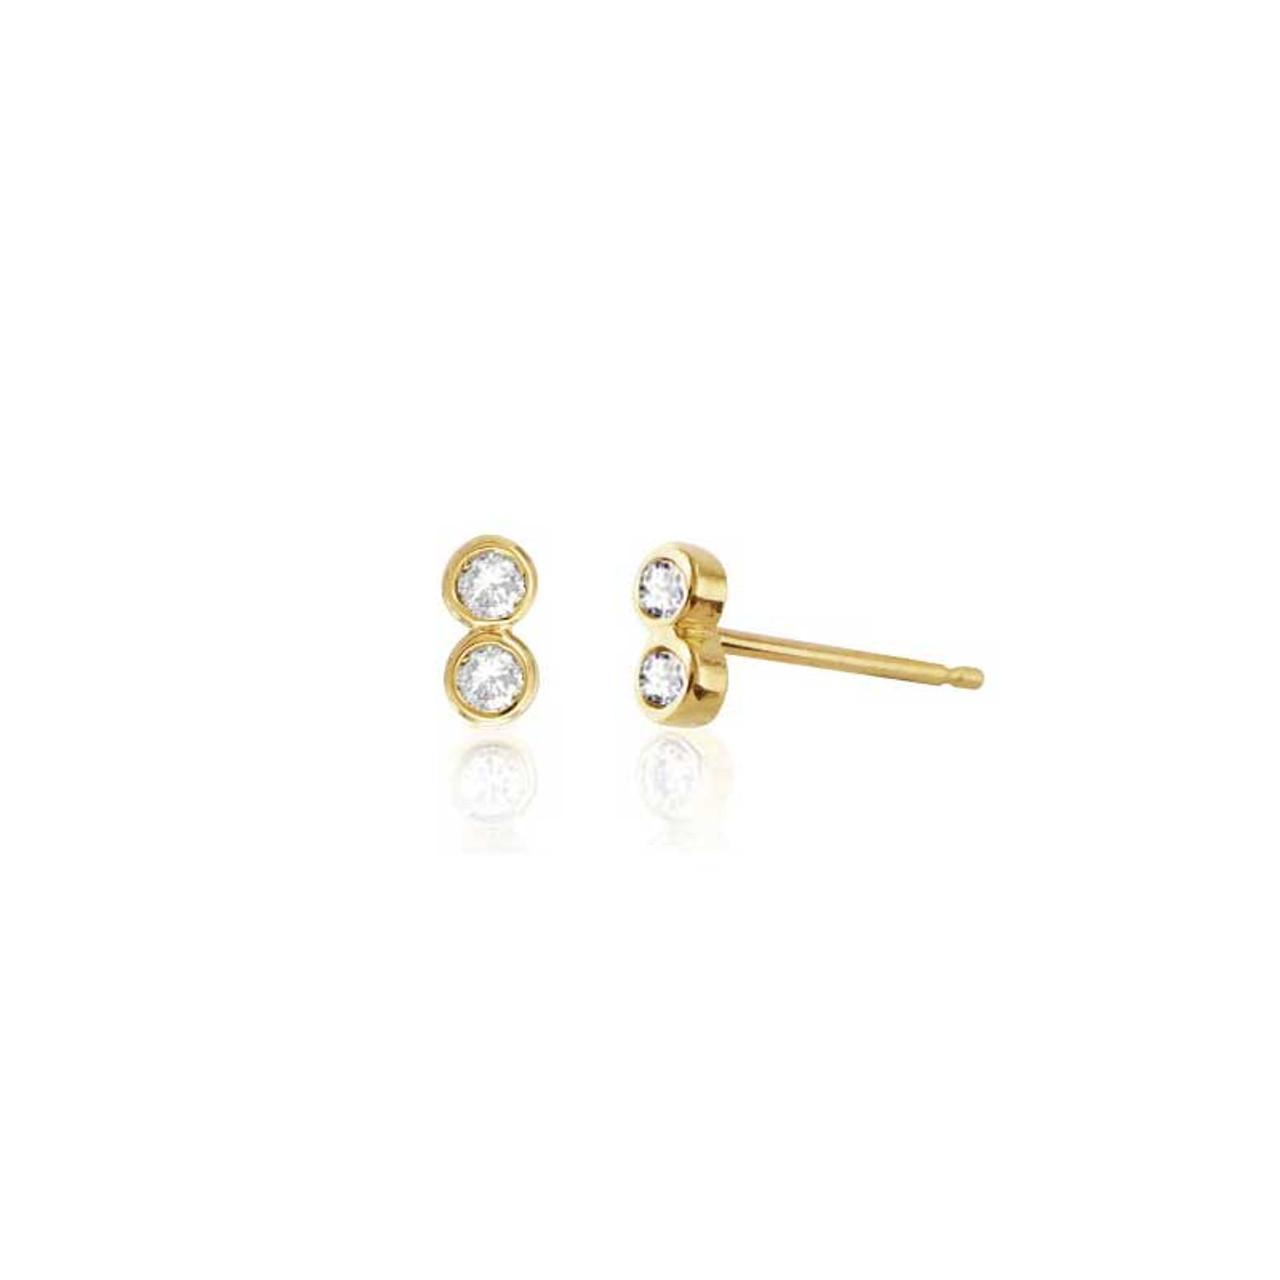 Buy Black Diamond Stud Earrings, Second Hole Earrings, Third Hole Earrings,  Minimalist Studs, Black Diamond Gifts, 14K Gold Diamond Earrings Online in  India - Etsy